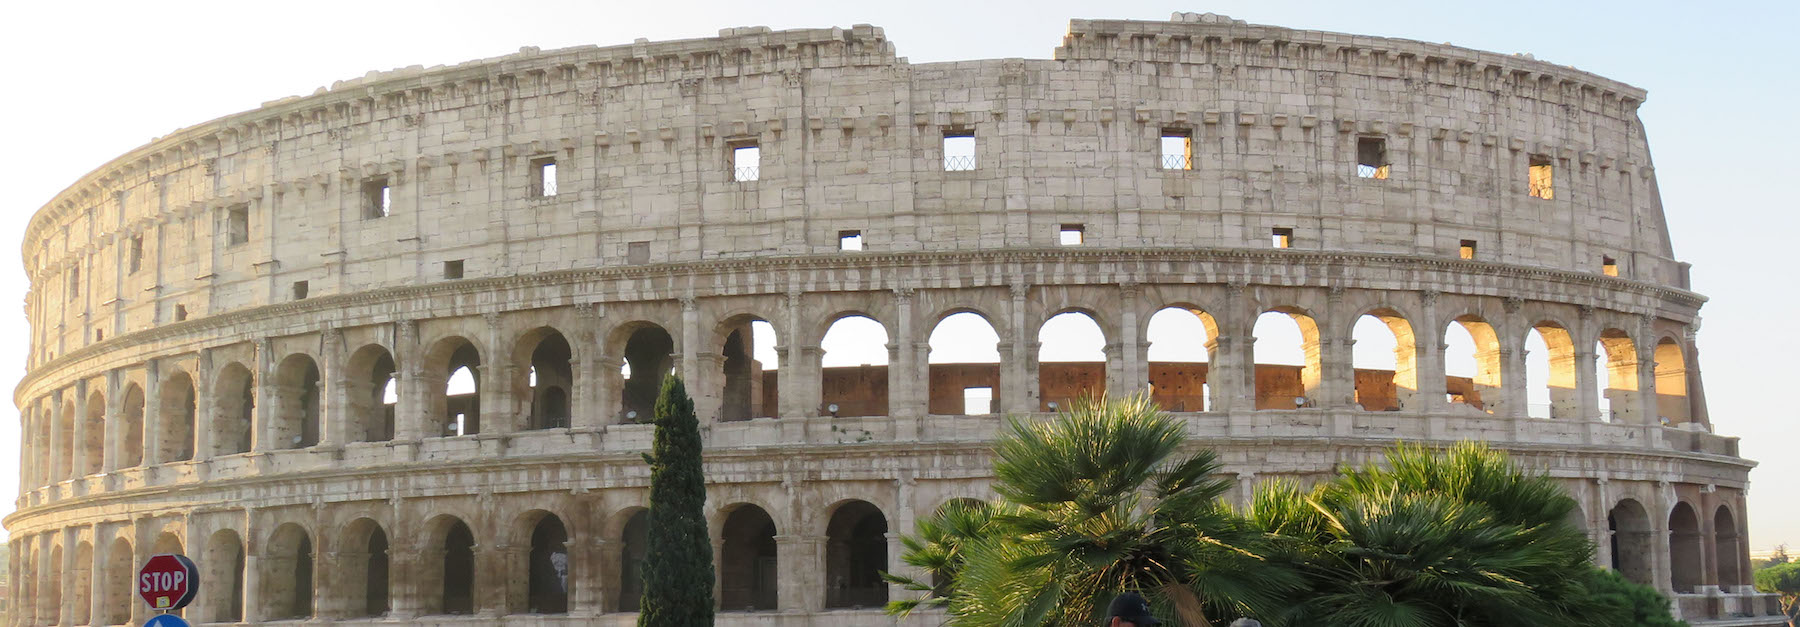 Ides_2_Colosseum.jpg